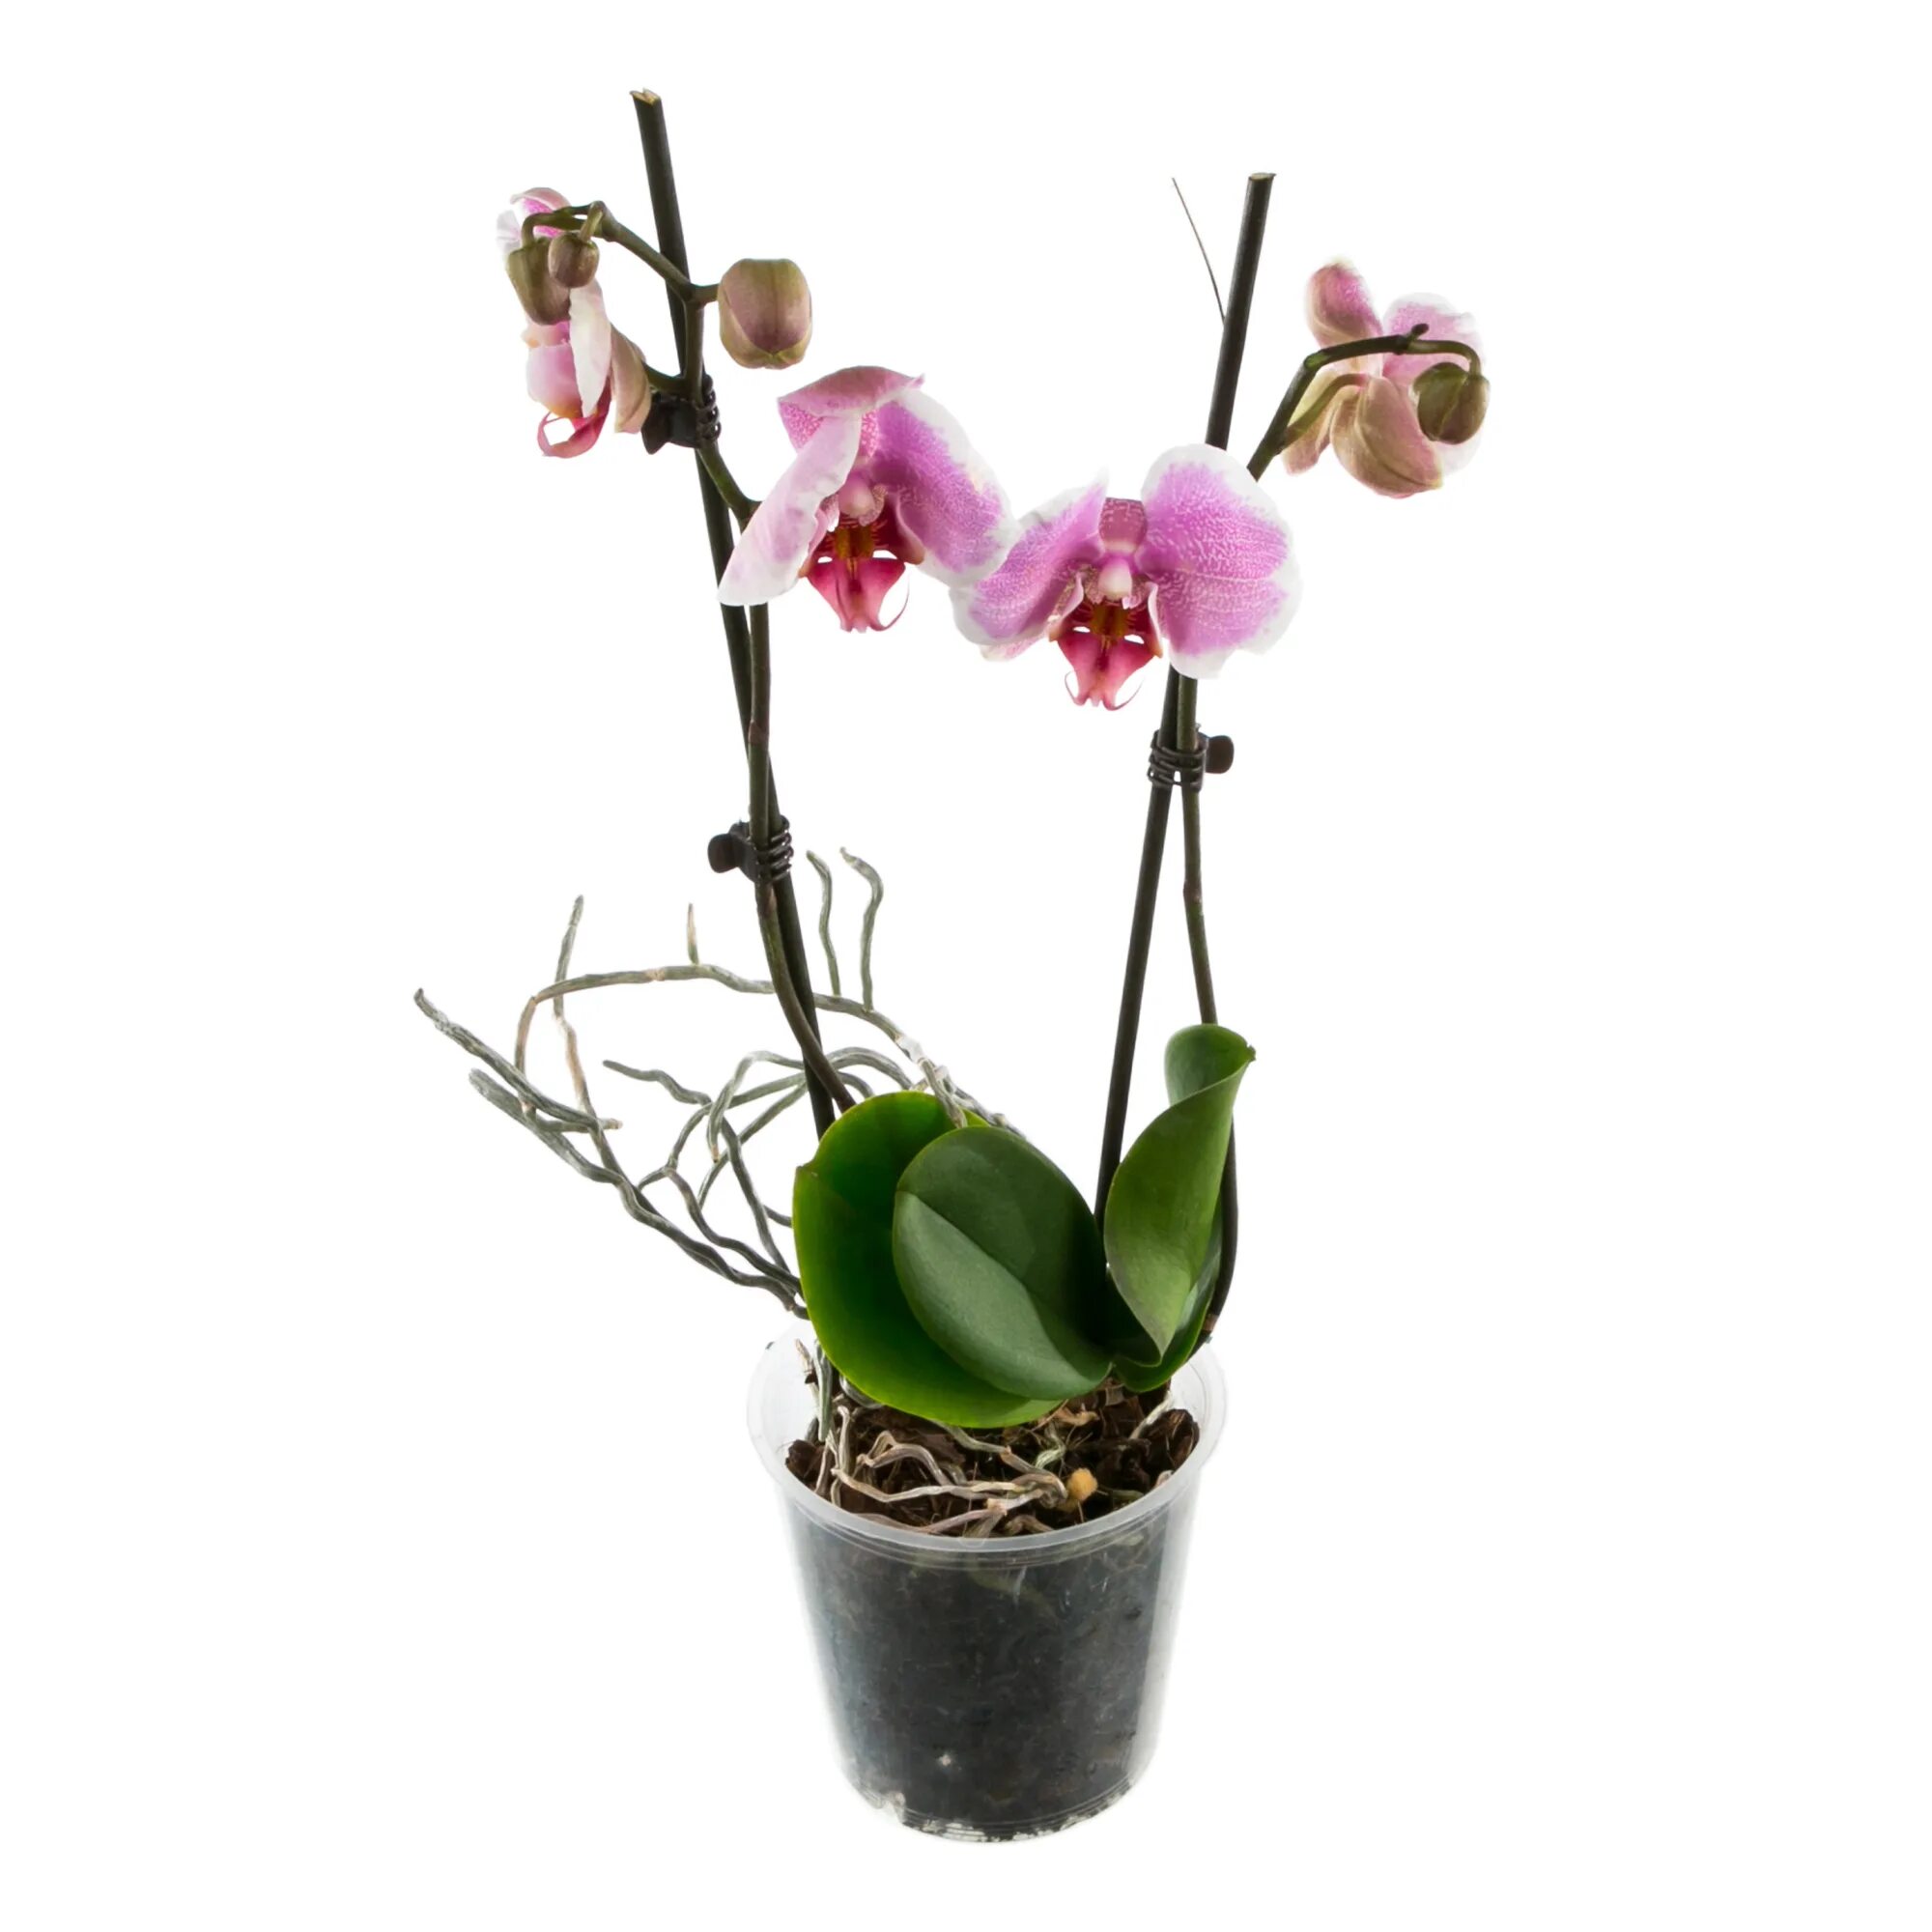 Орхидея в горшке купить в нижнем. Орхидея фаленопсис микс. Фаленопсис мини микс. Орхидеи в Леруа Мерлен. Орхидея фаленопсис мини микс.